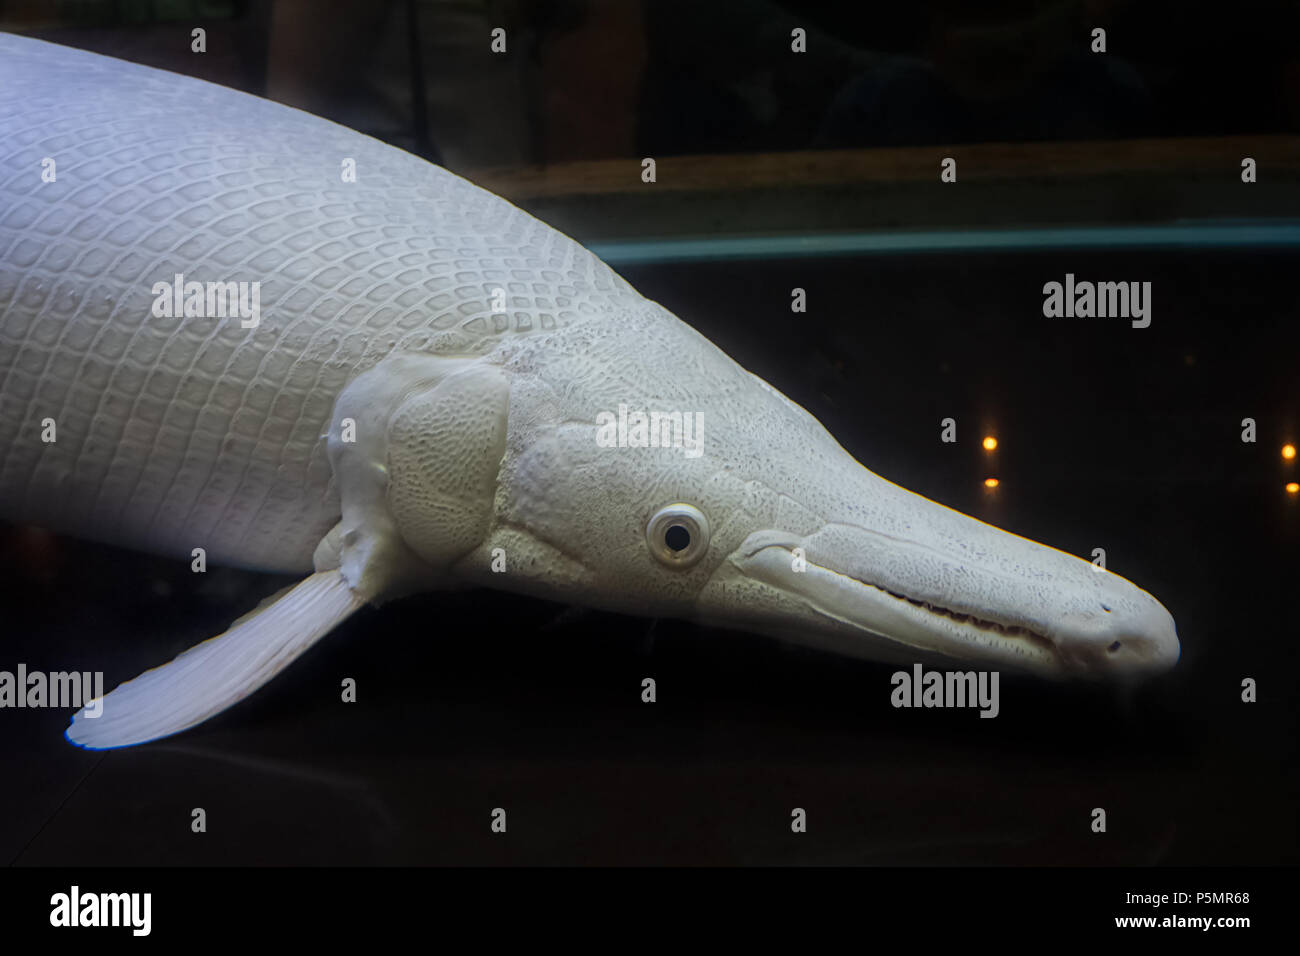 Albino alligator gar fish in aquarium Stock Photo